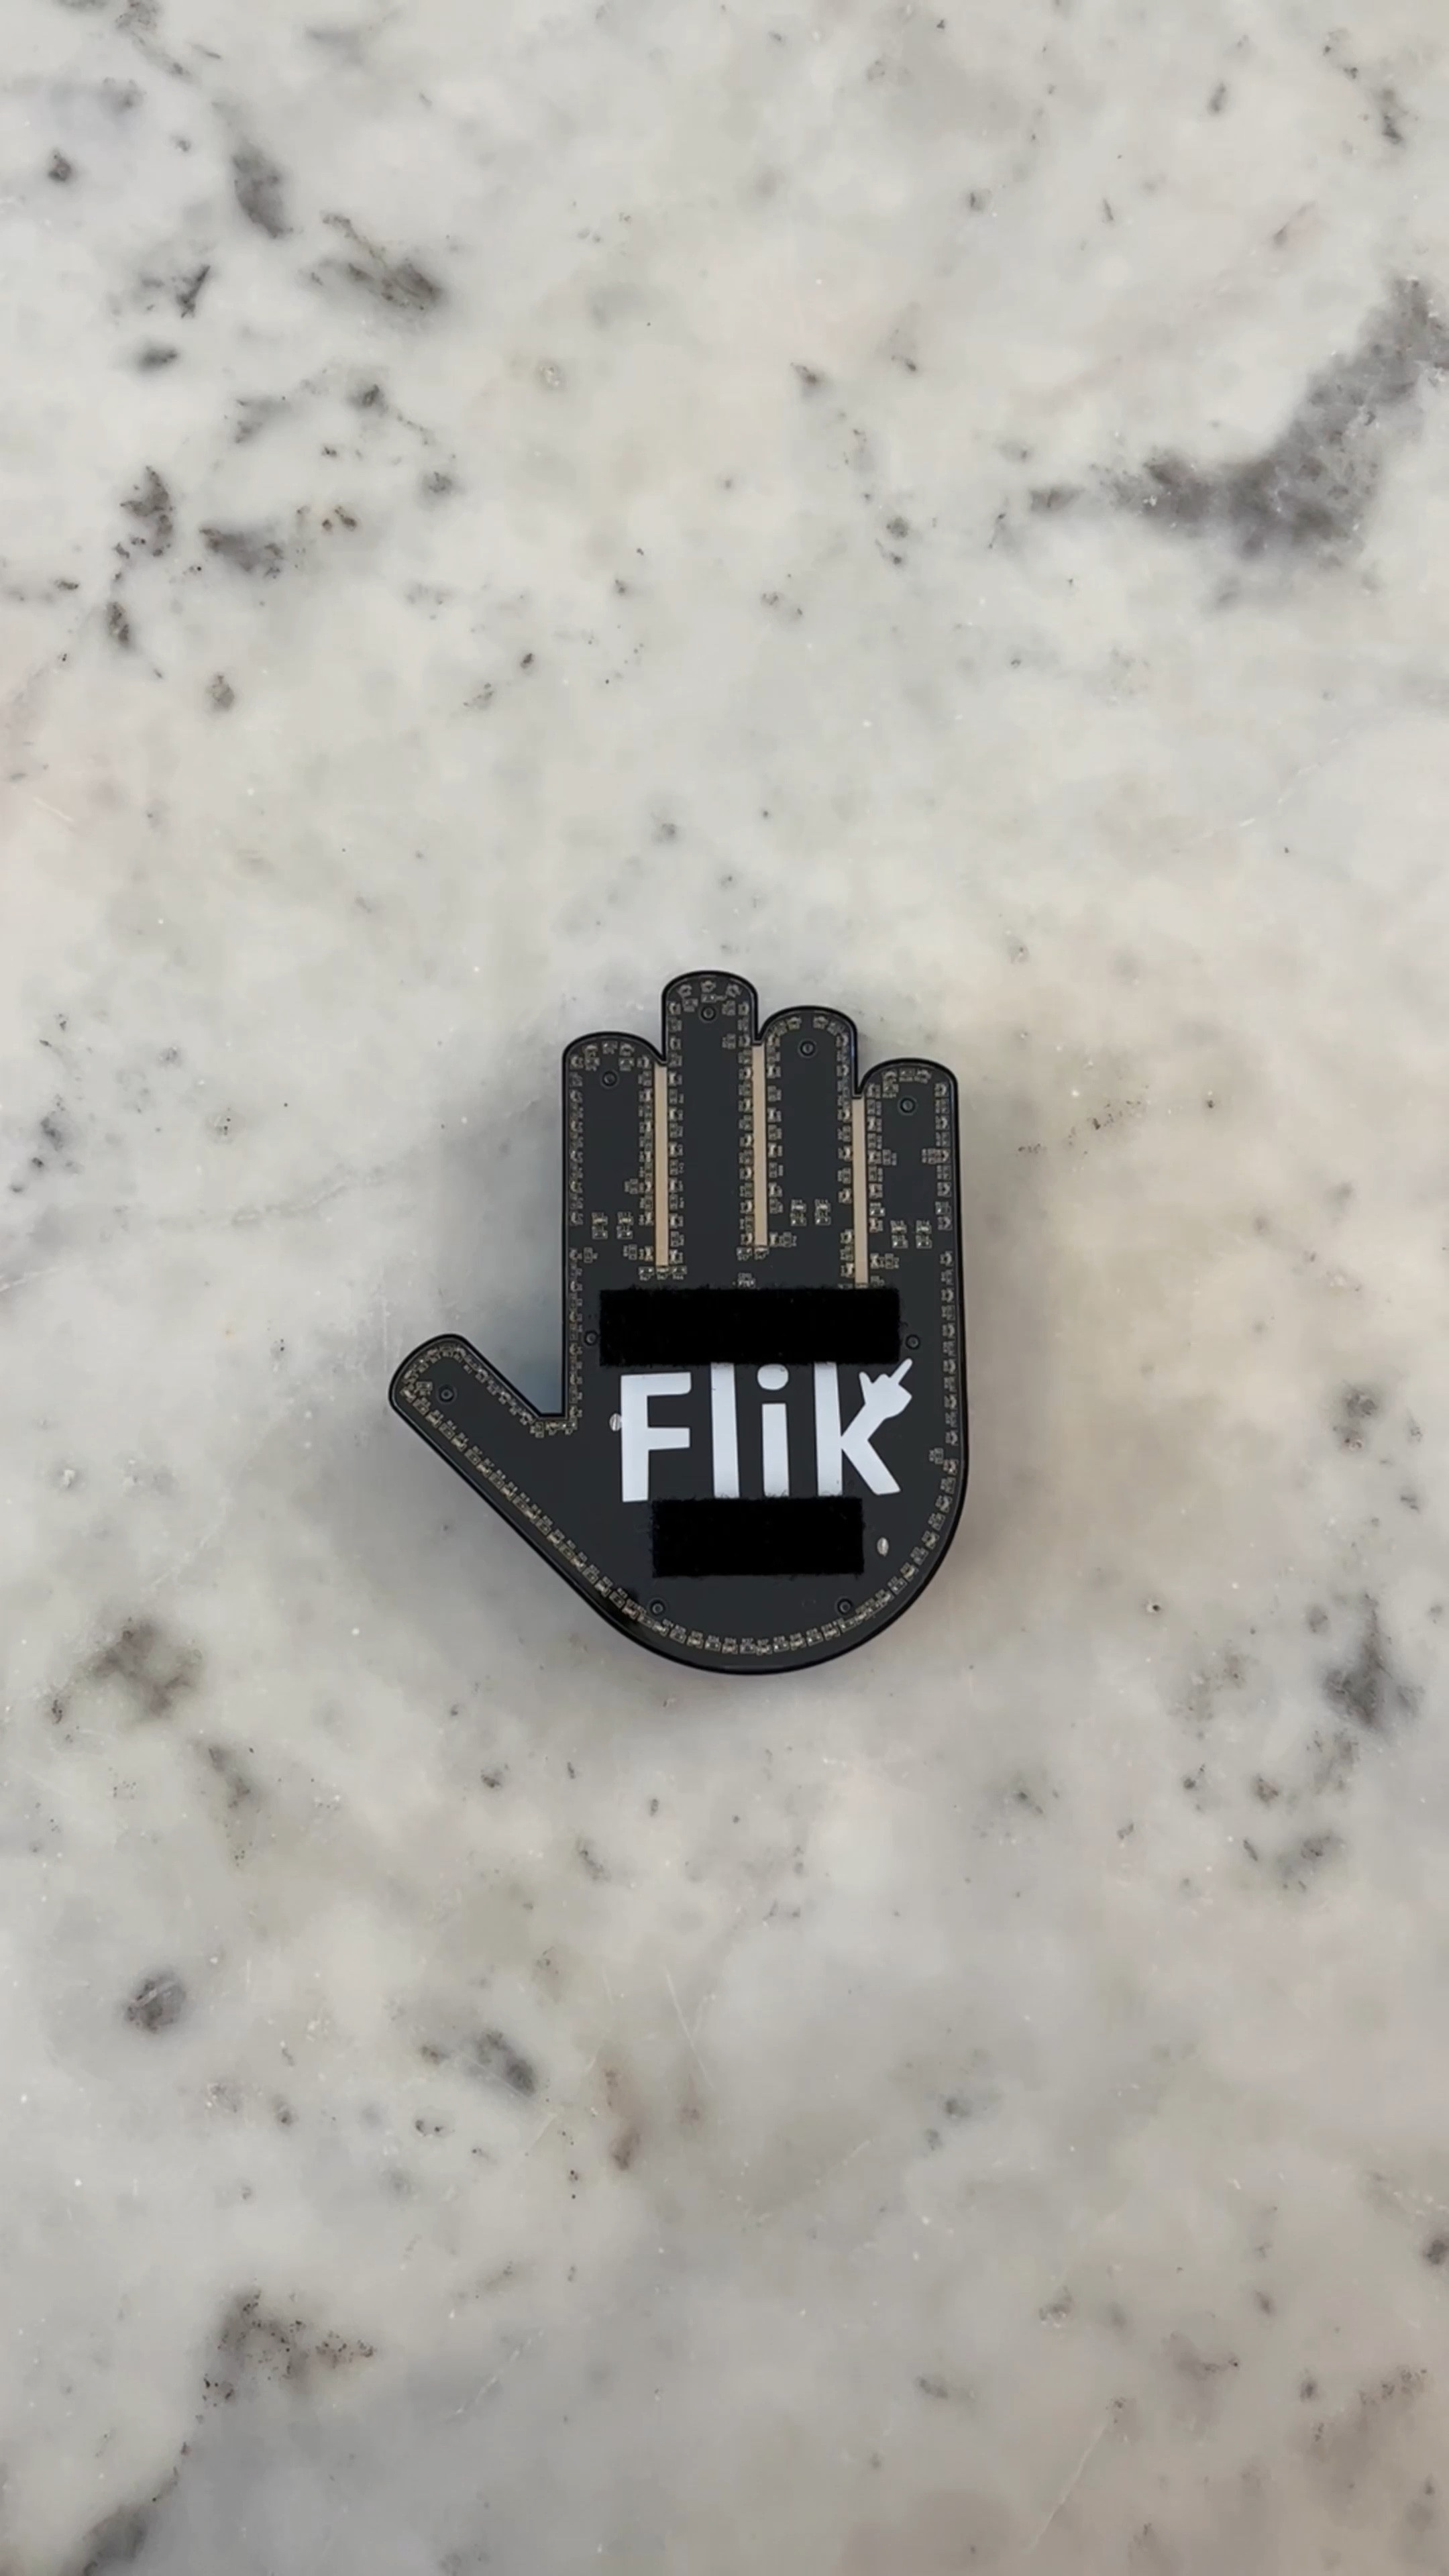 FLIK Original Middle Finger Light – Give The Bird & Wave to